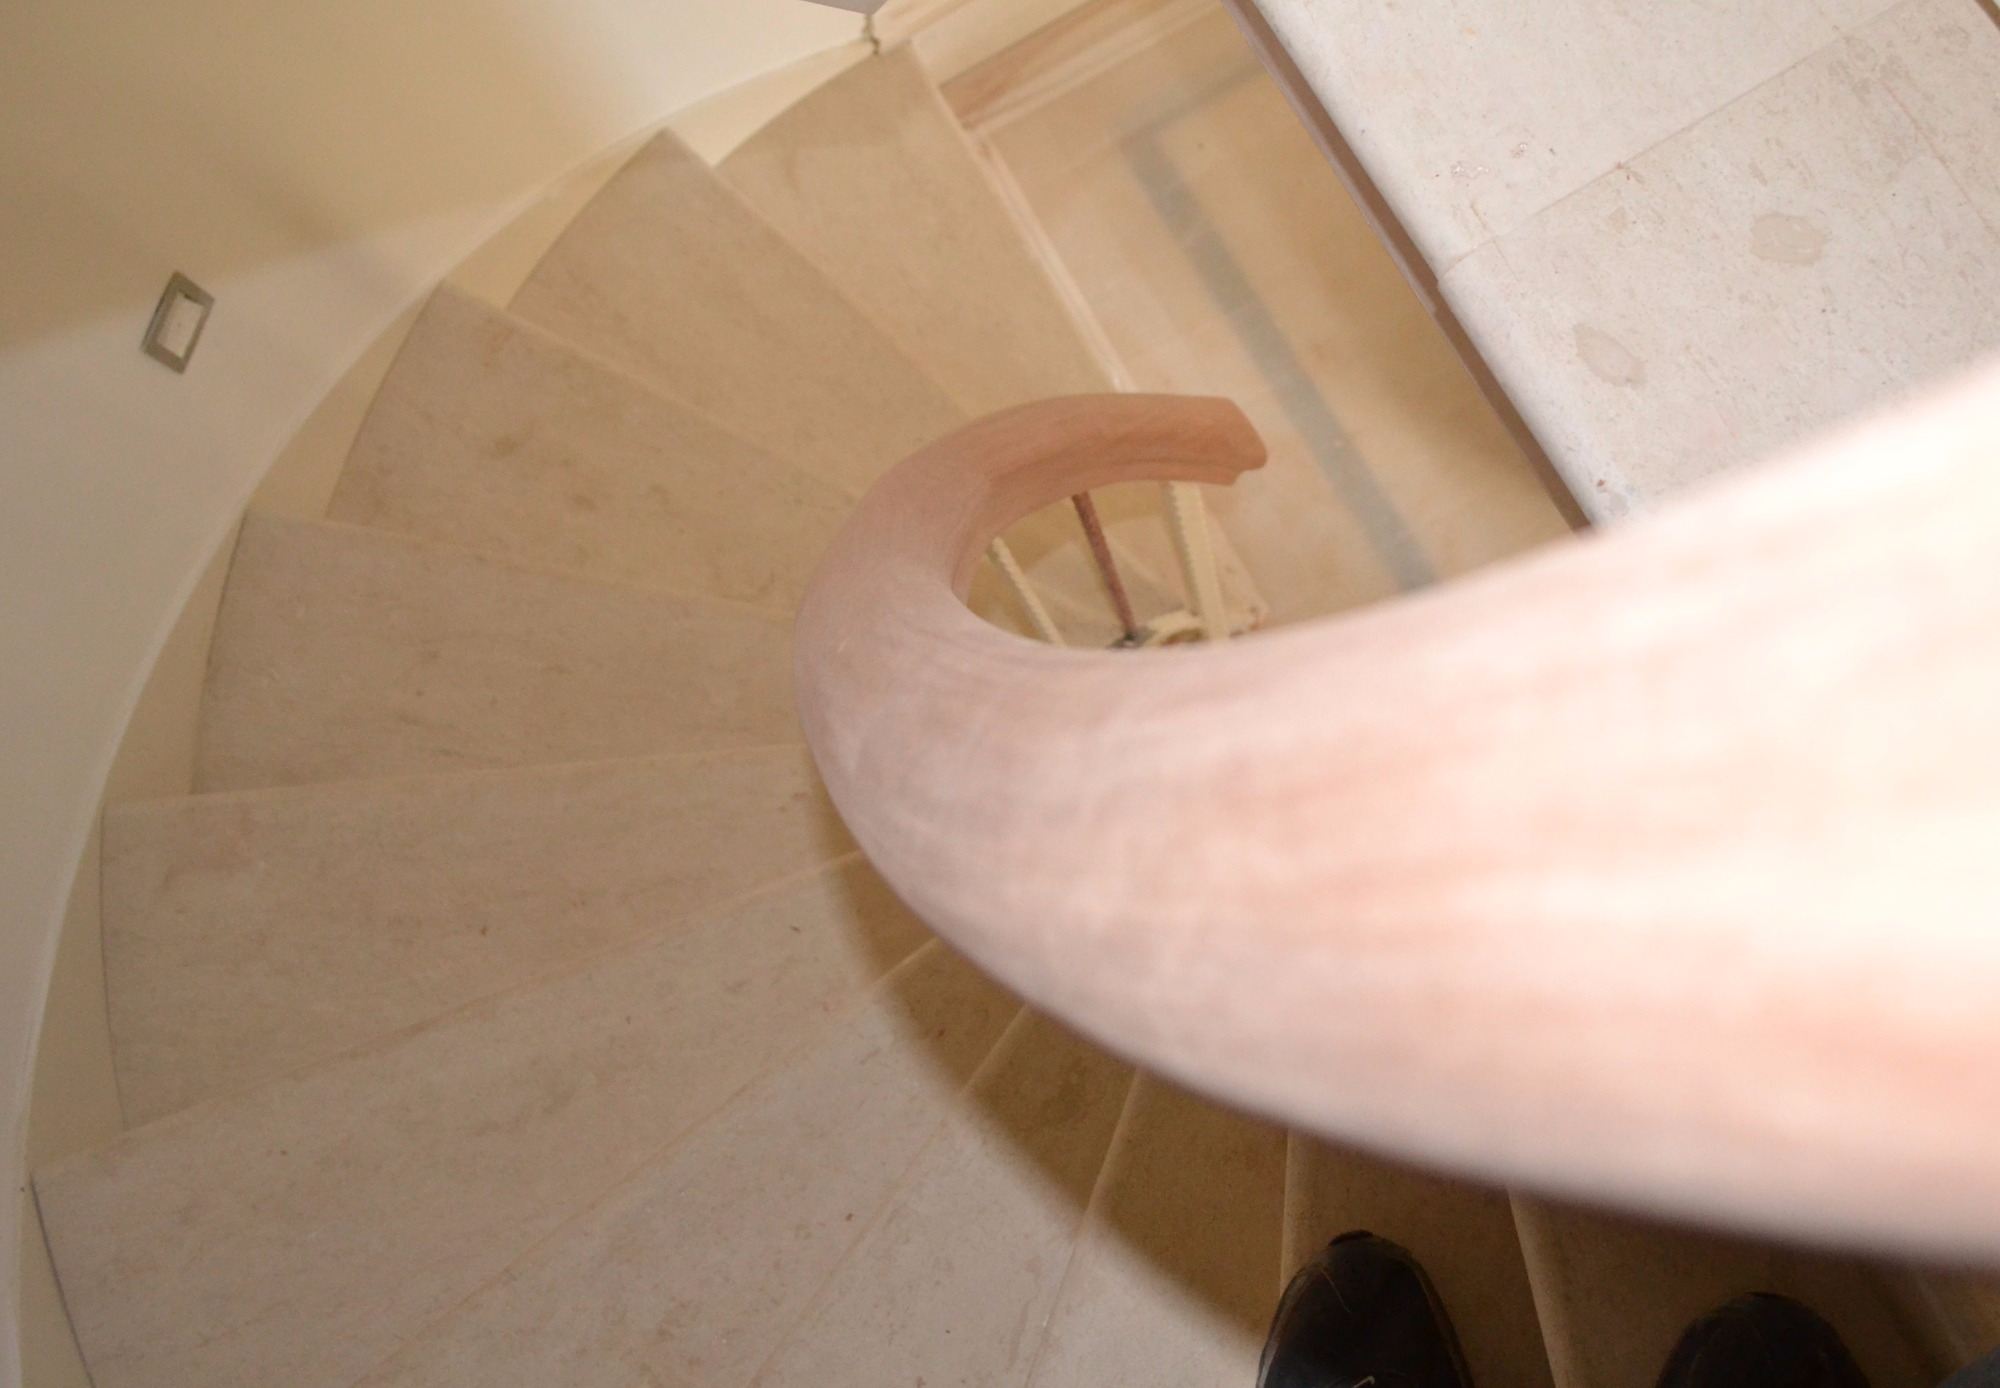 Handrail spiral